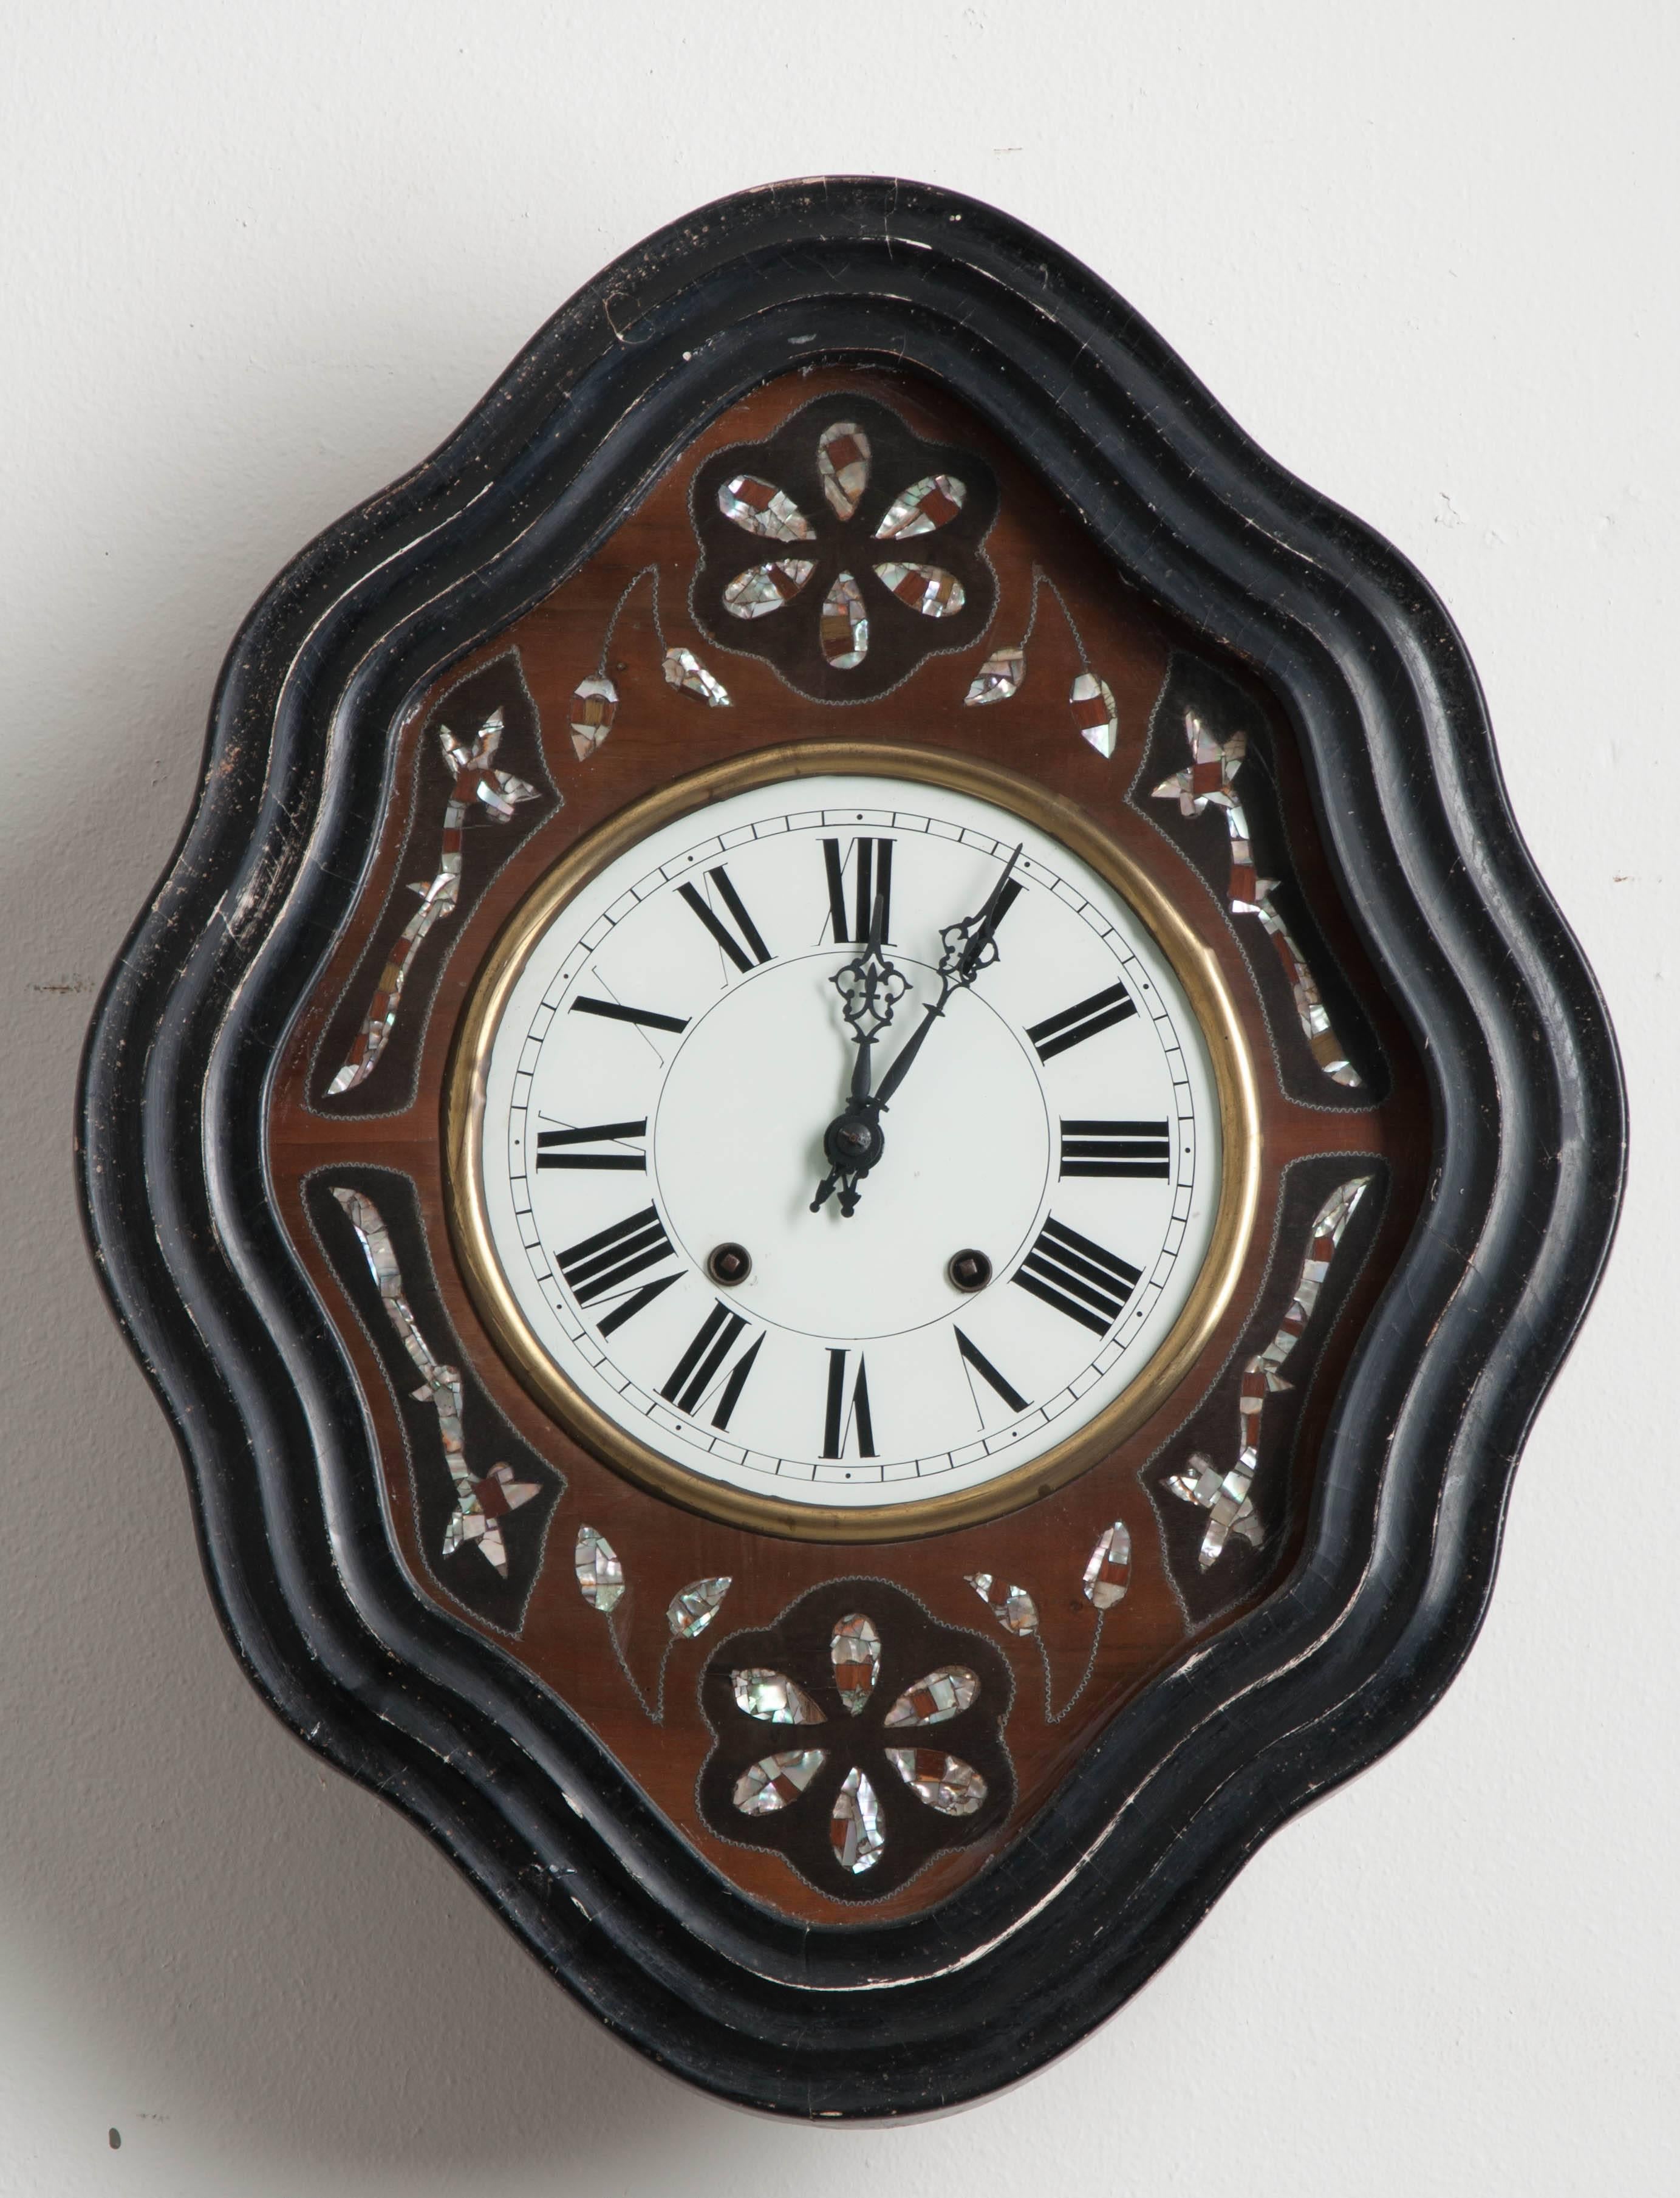 Cette horloge du XIXe siècle est étonnante avec son cadre ondulé en forme de diamant en bois peint en ébène. Des motifs floraux et feuillus en nacre sont incrustés dans de l'acajou différemment teinté et de la nacre brillante, entourant le cadran de